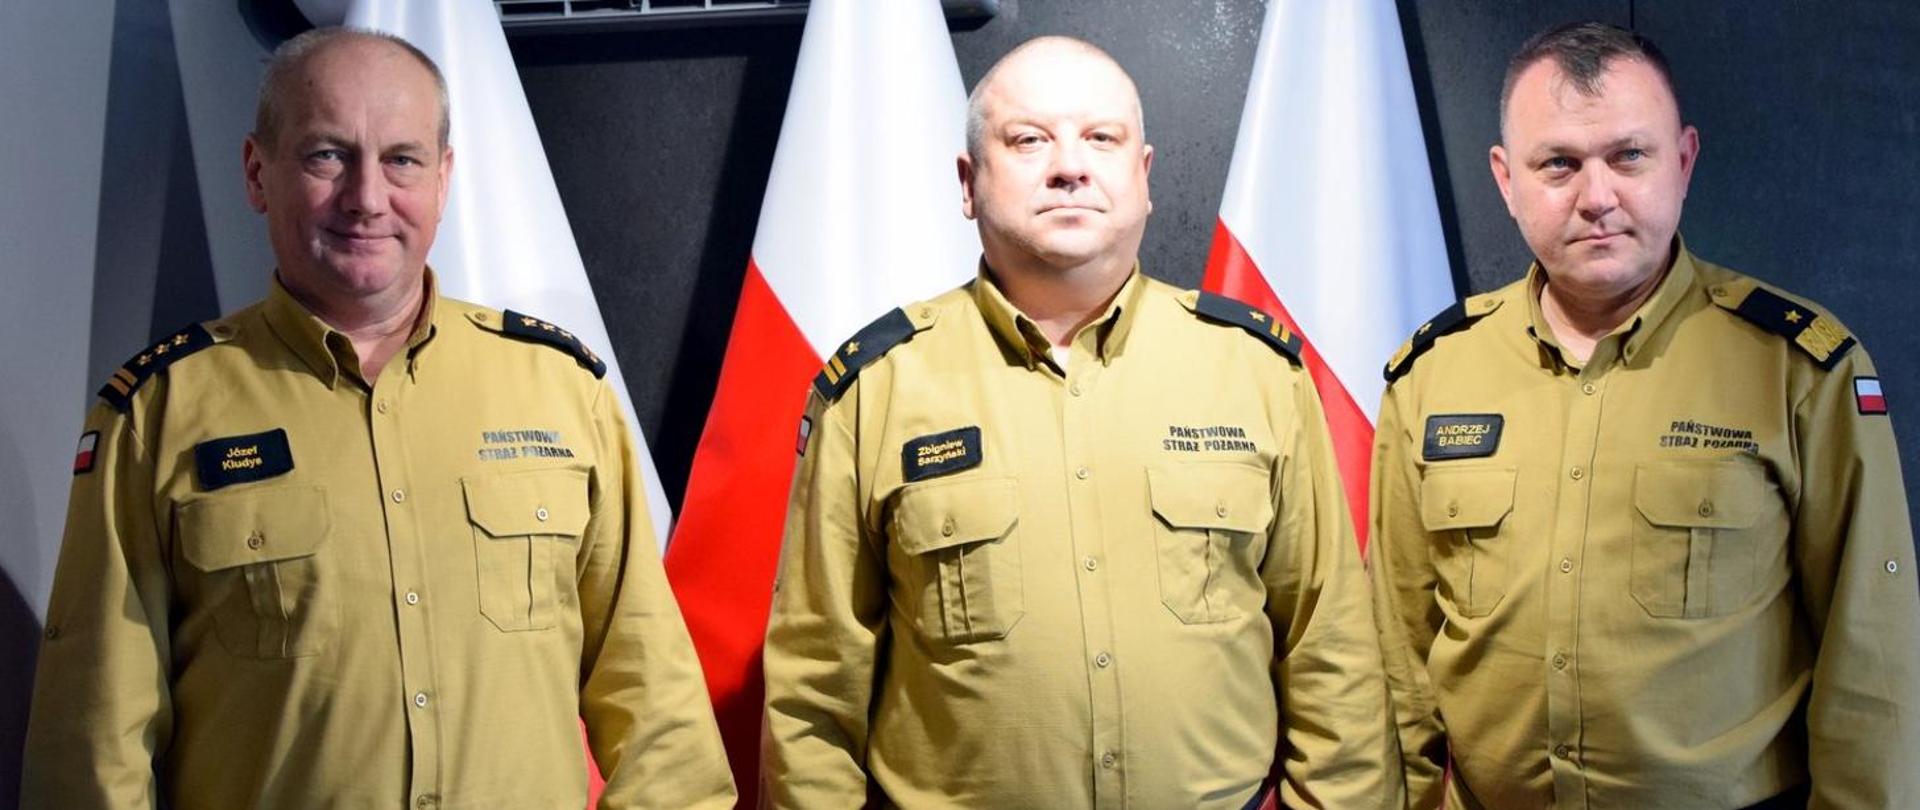 Zdjęcie zrobione wewnątrz pomieszczenia. Na zdjęciu trzech oficerów Państwowej Straży Pożarnej. Za nimi ustawione są biało-czerwone flagi.